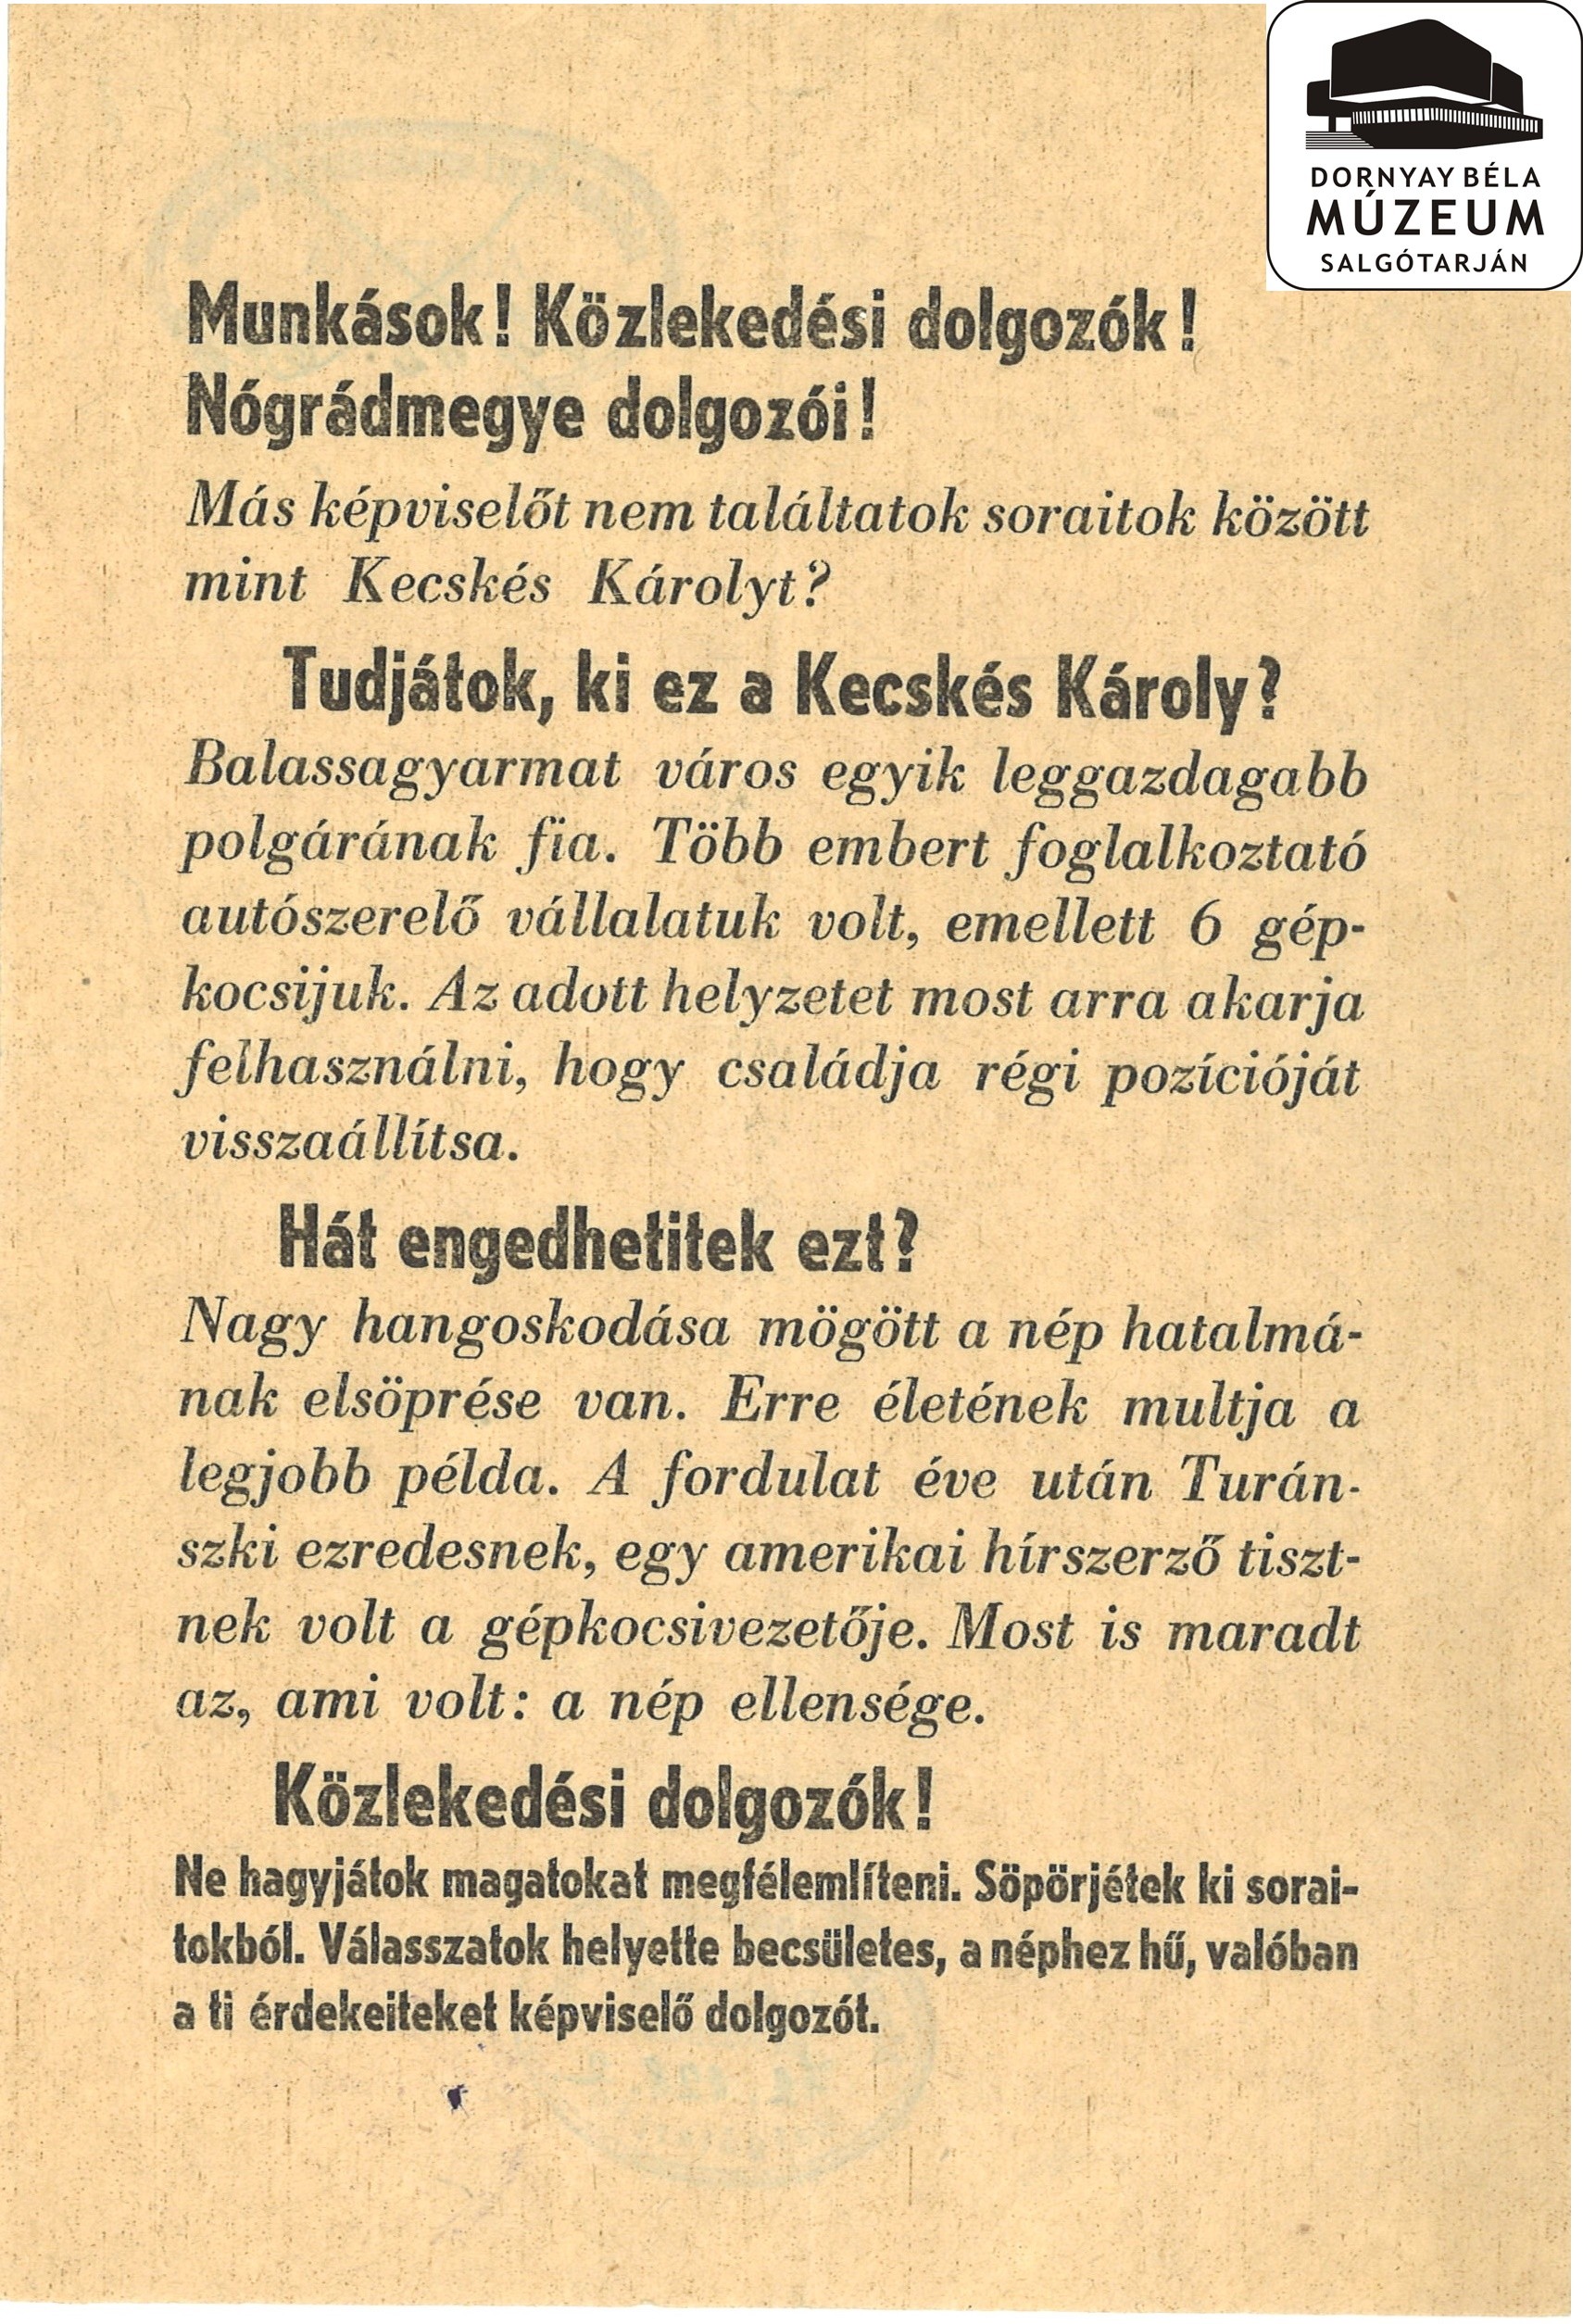 Felhívás a munkásokhoz, közlekedési dolgozókhoz, Nógrád megye dolgozóihoz. (Dornyay Béla Múzeum, Salgótarján CC BY-NC-SA)